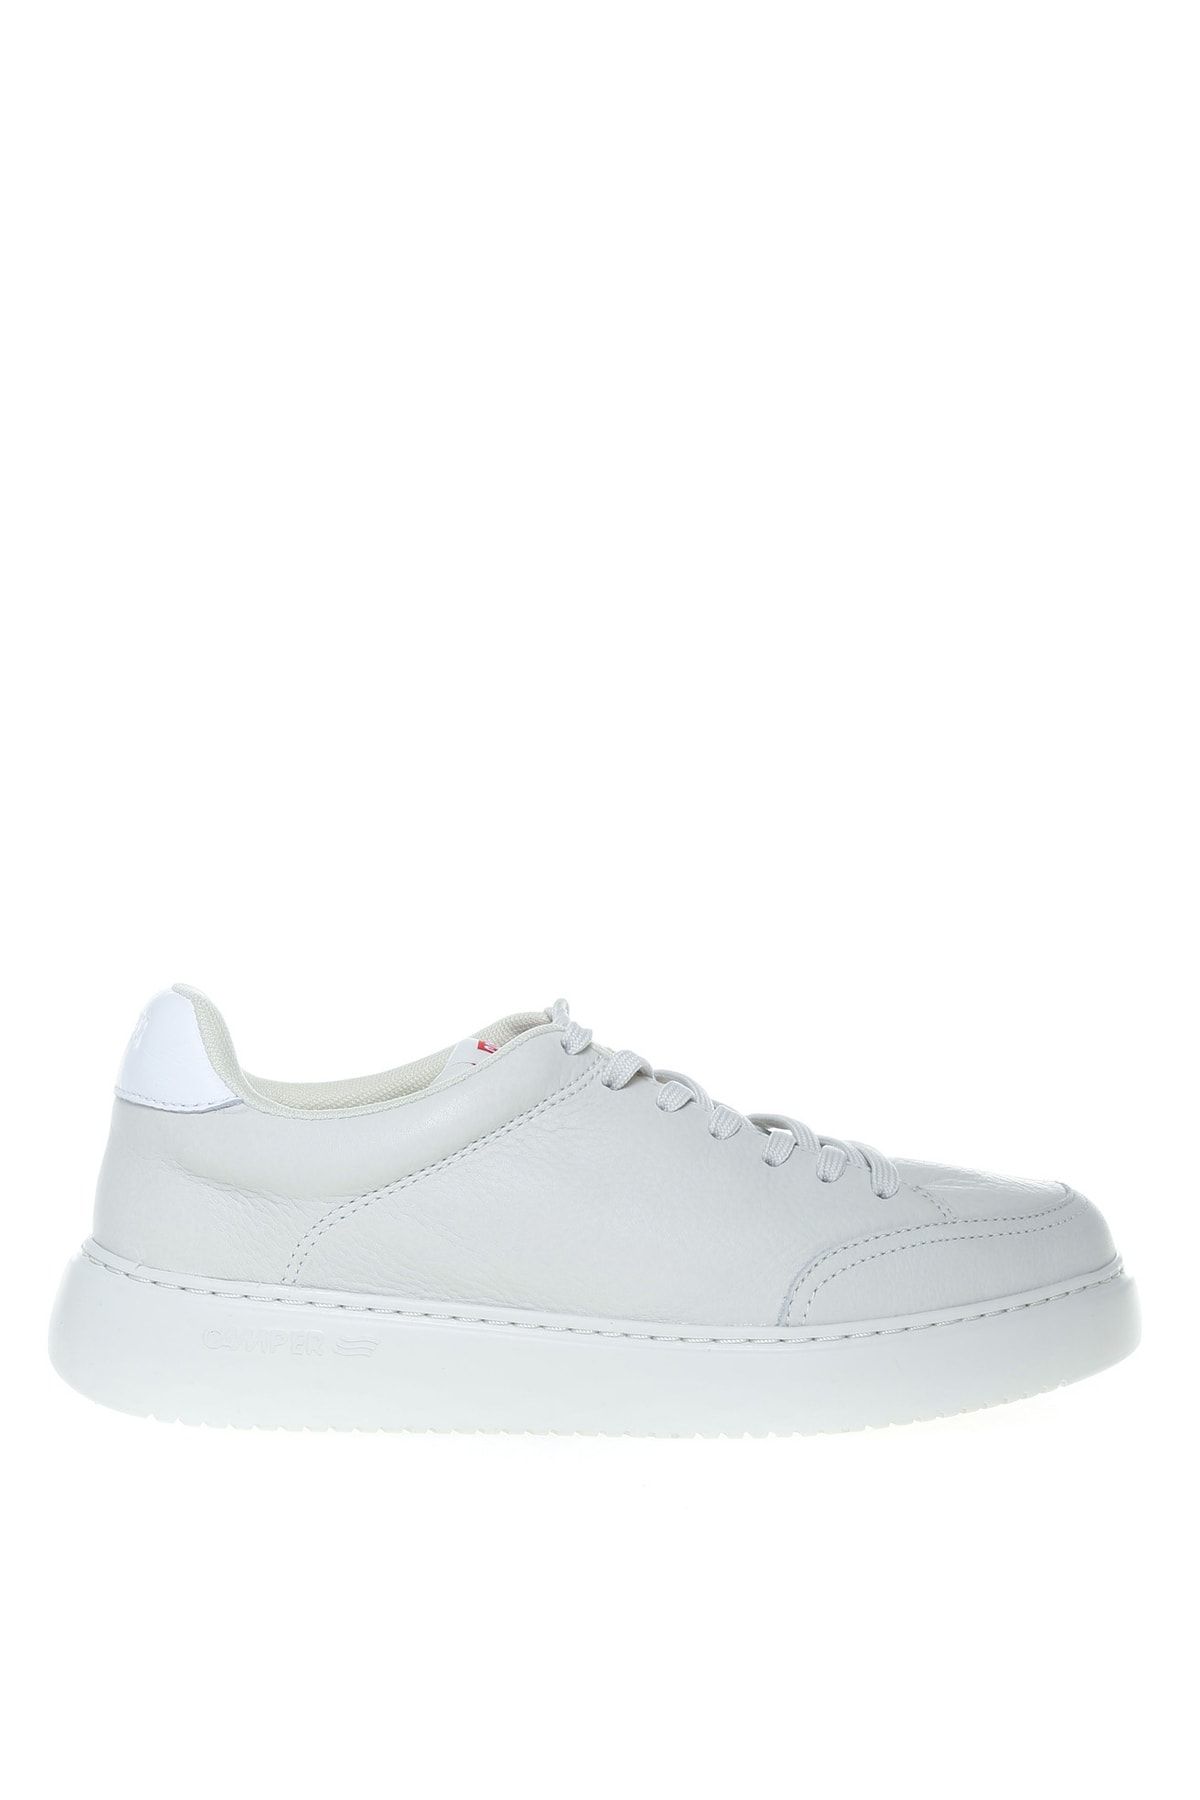 CAMPER Deri Beyaz Kadın Günlük Ayakkabı K201438-003